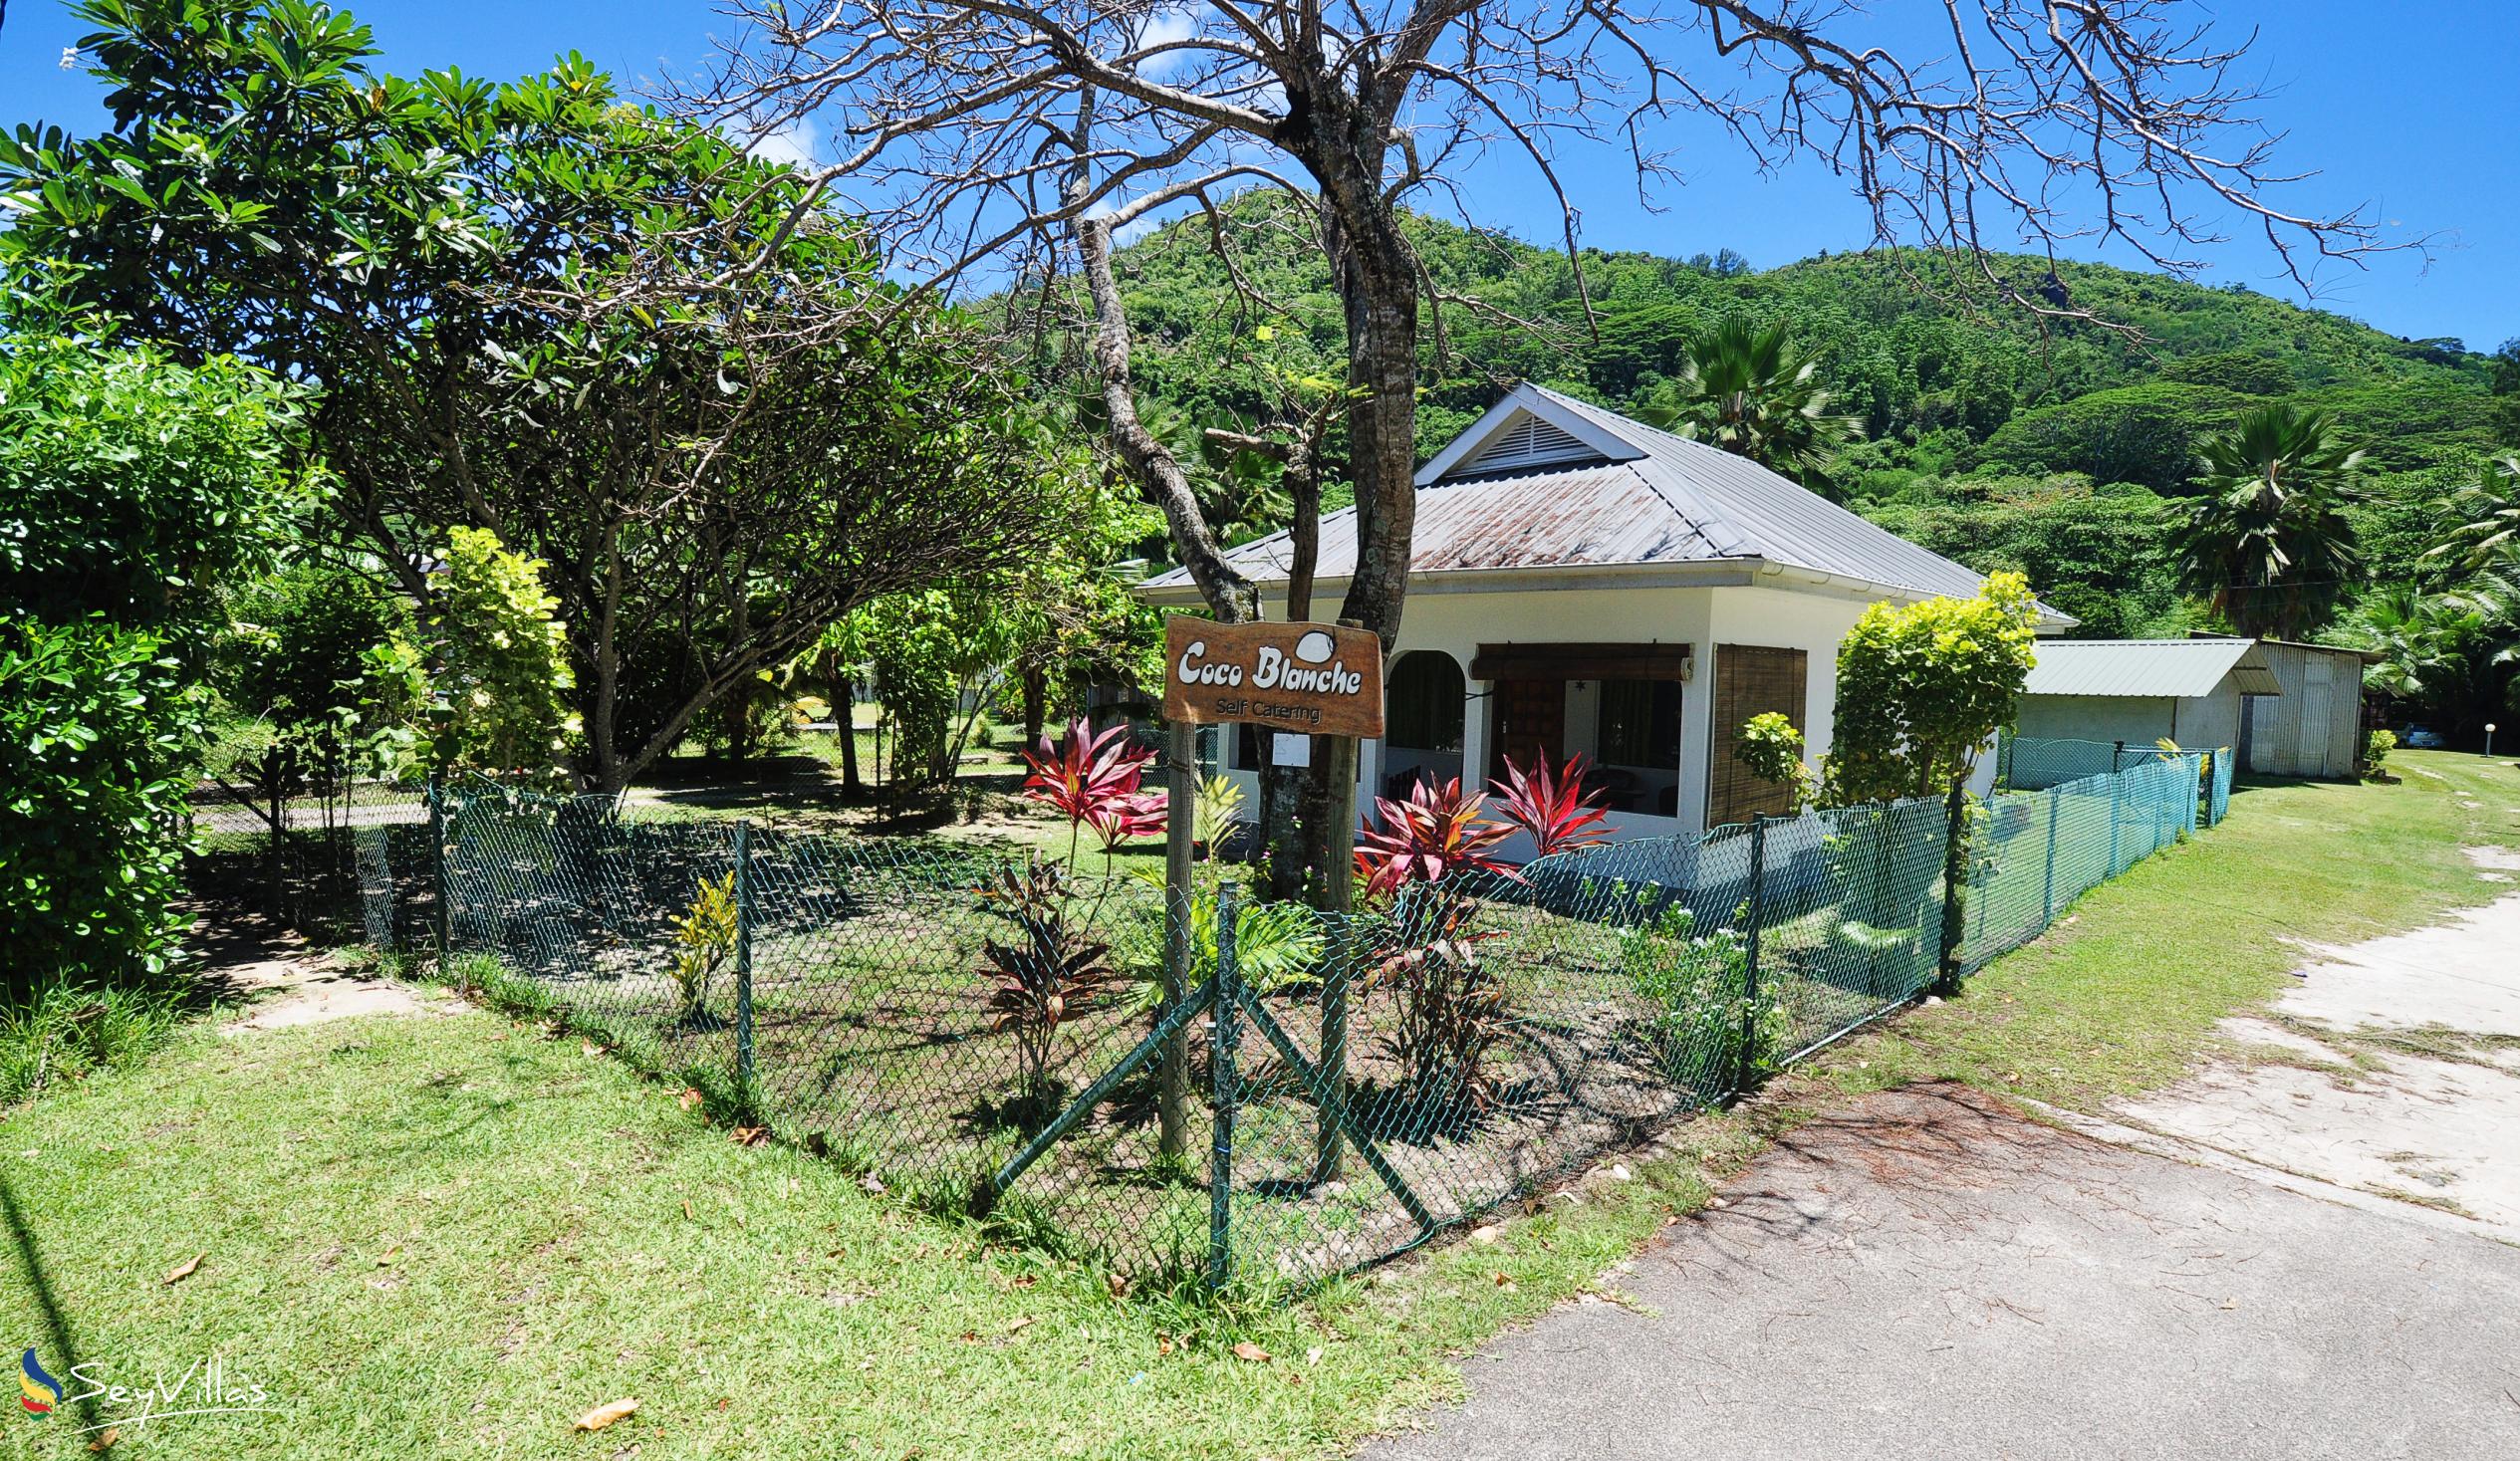 Foto 27: Coco Blanche - Villa mit Meerblick - Mahé (Seychellen)